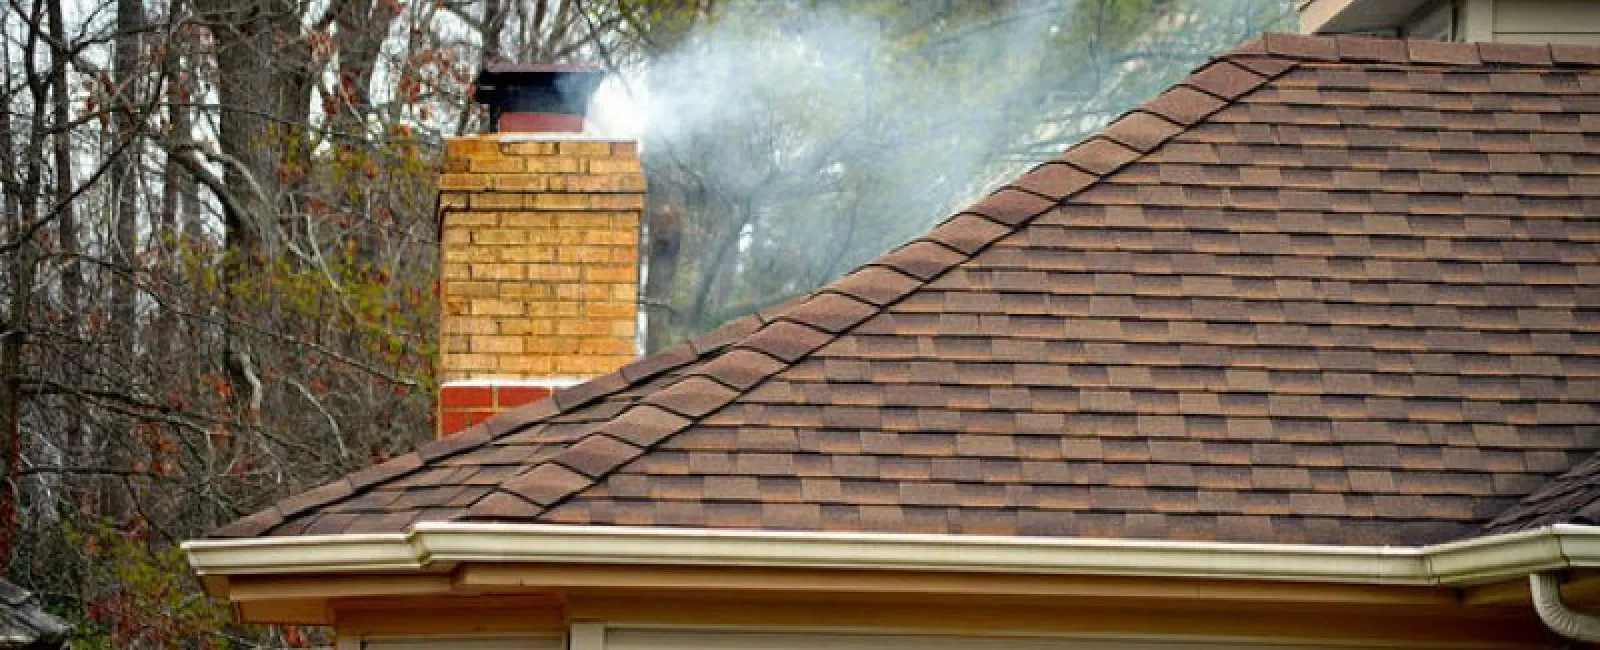 Roof Repairs Around Your Chimney